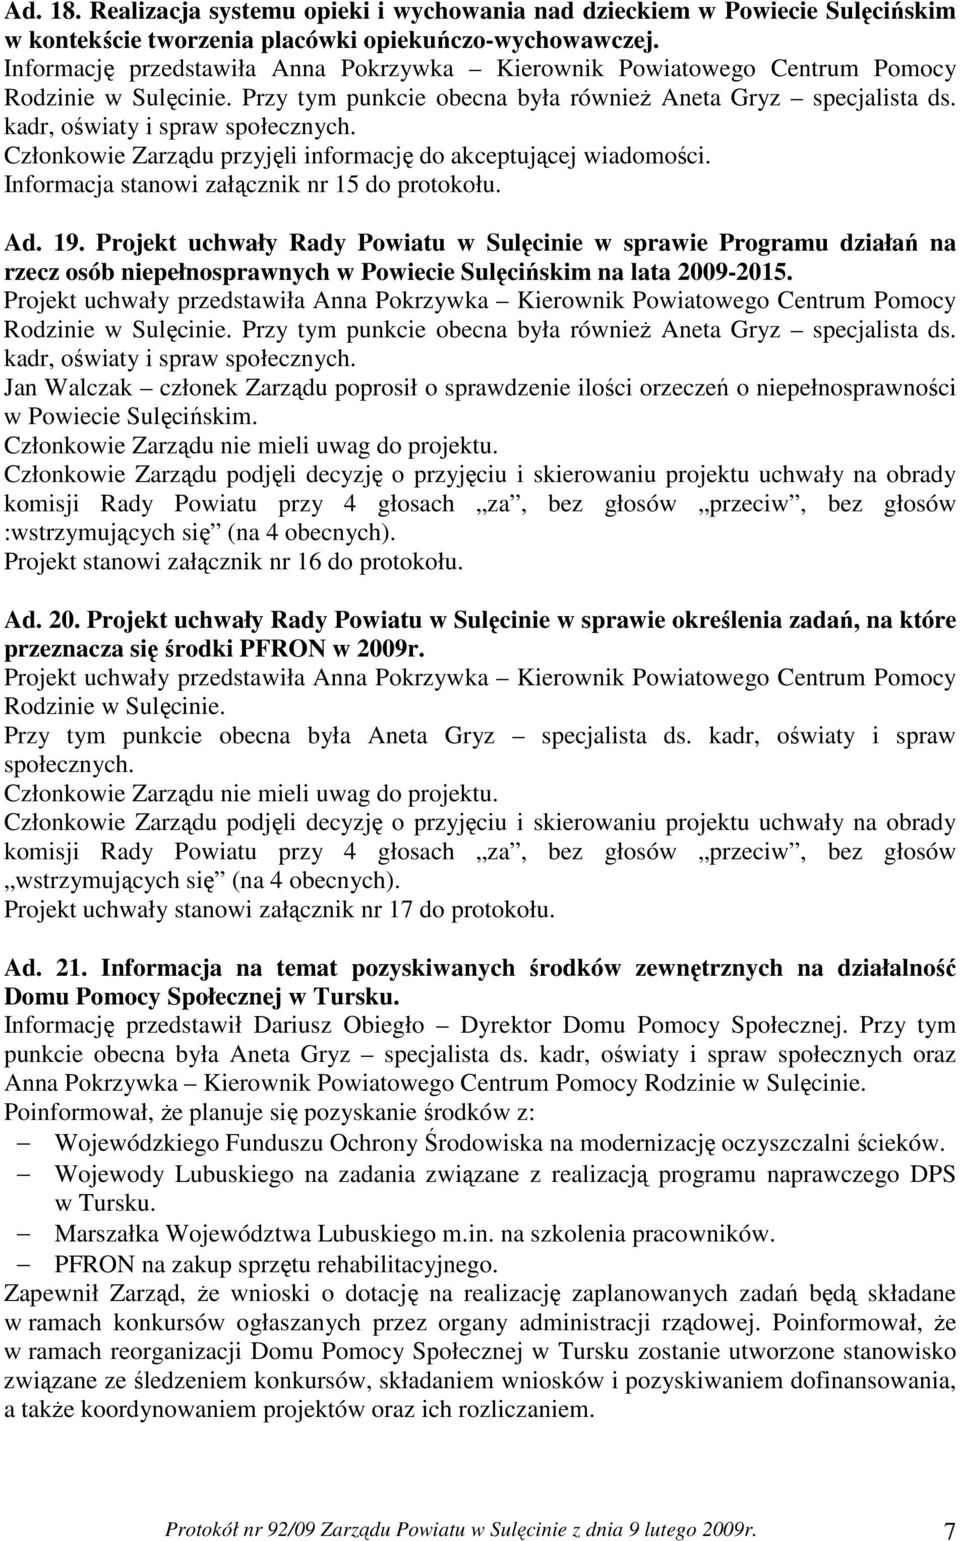 Informacja stanowi załącznik nr 15 do protokołu. Ad. 19. Projekt uchwały Rady Powiatu w Sulęcinie w sprawie Programu działań na rzecz osób niepełnosprawnych w Powiecie Sulęcińskim na lata 2009-2015.